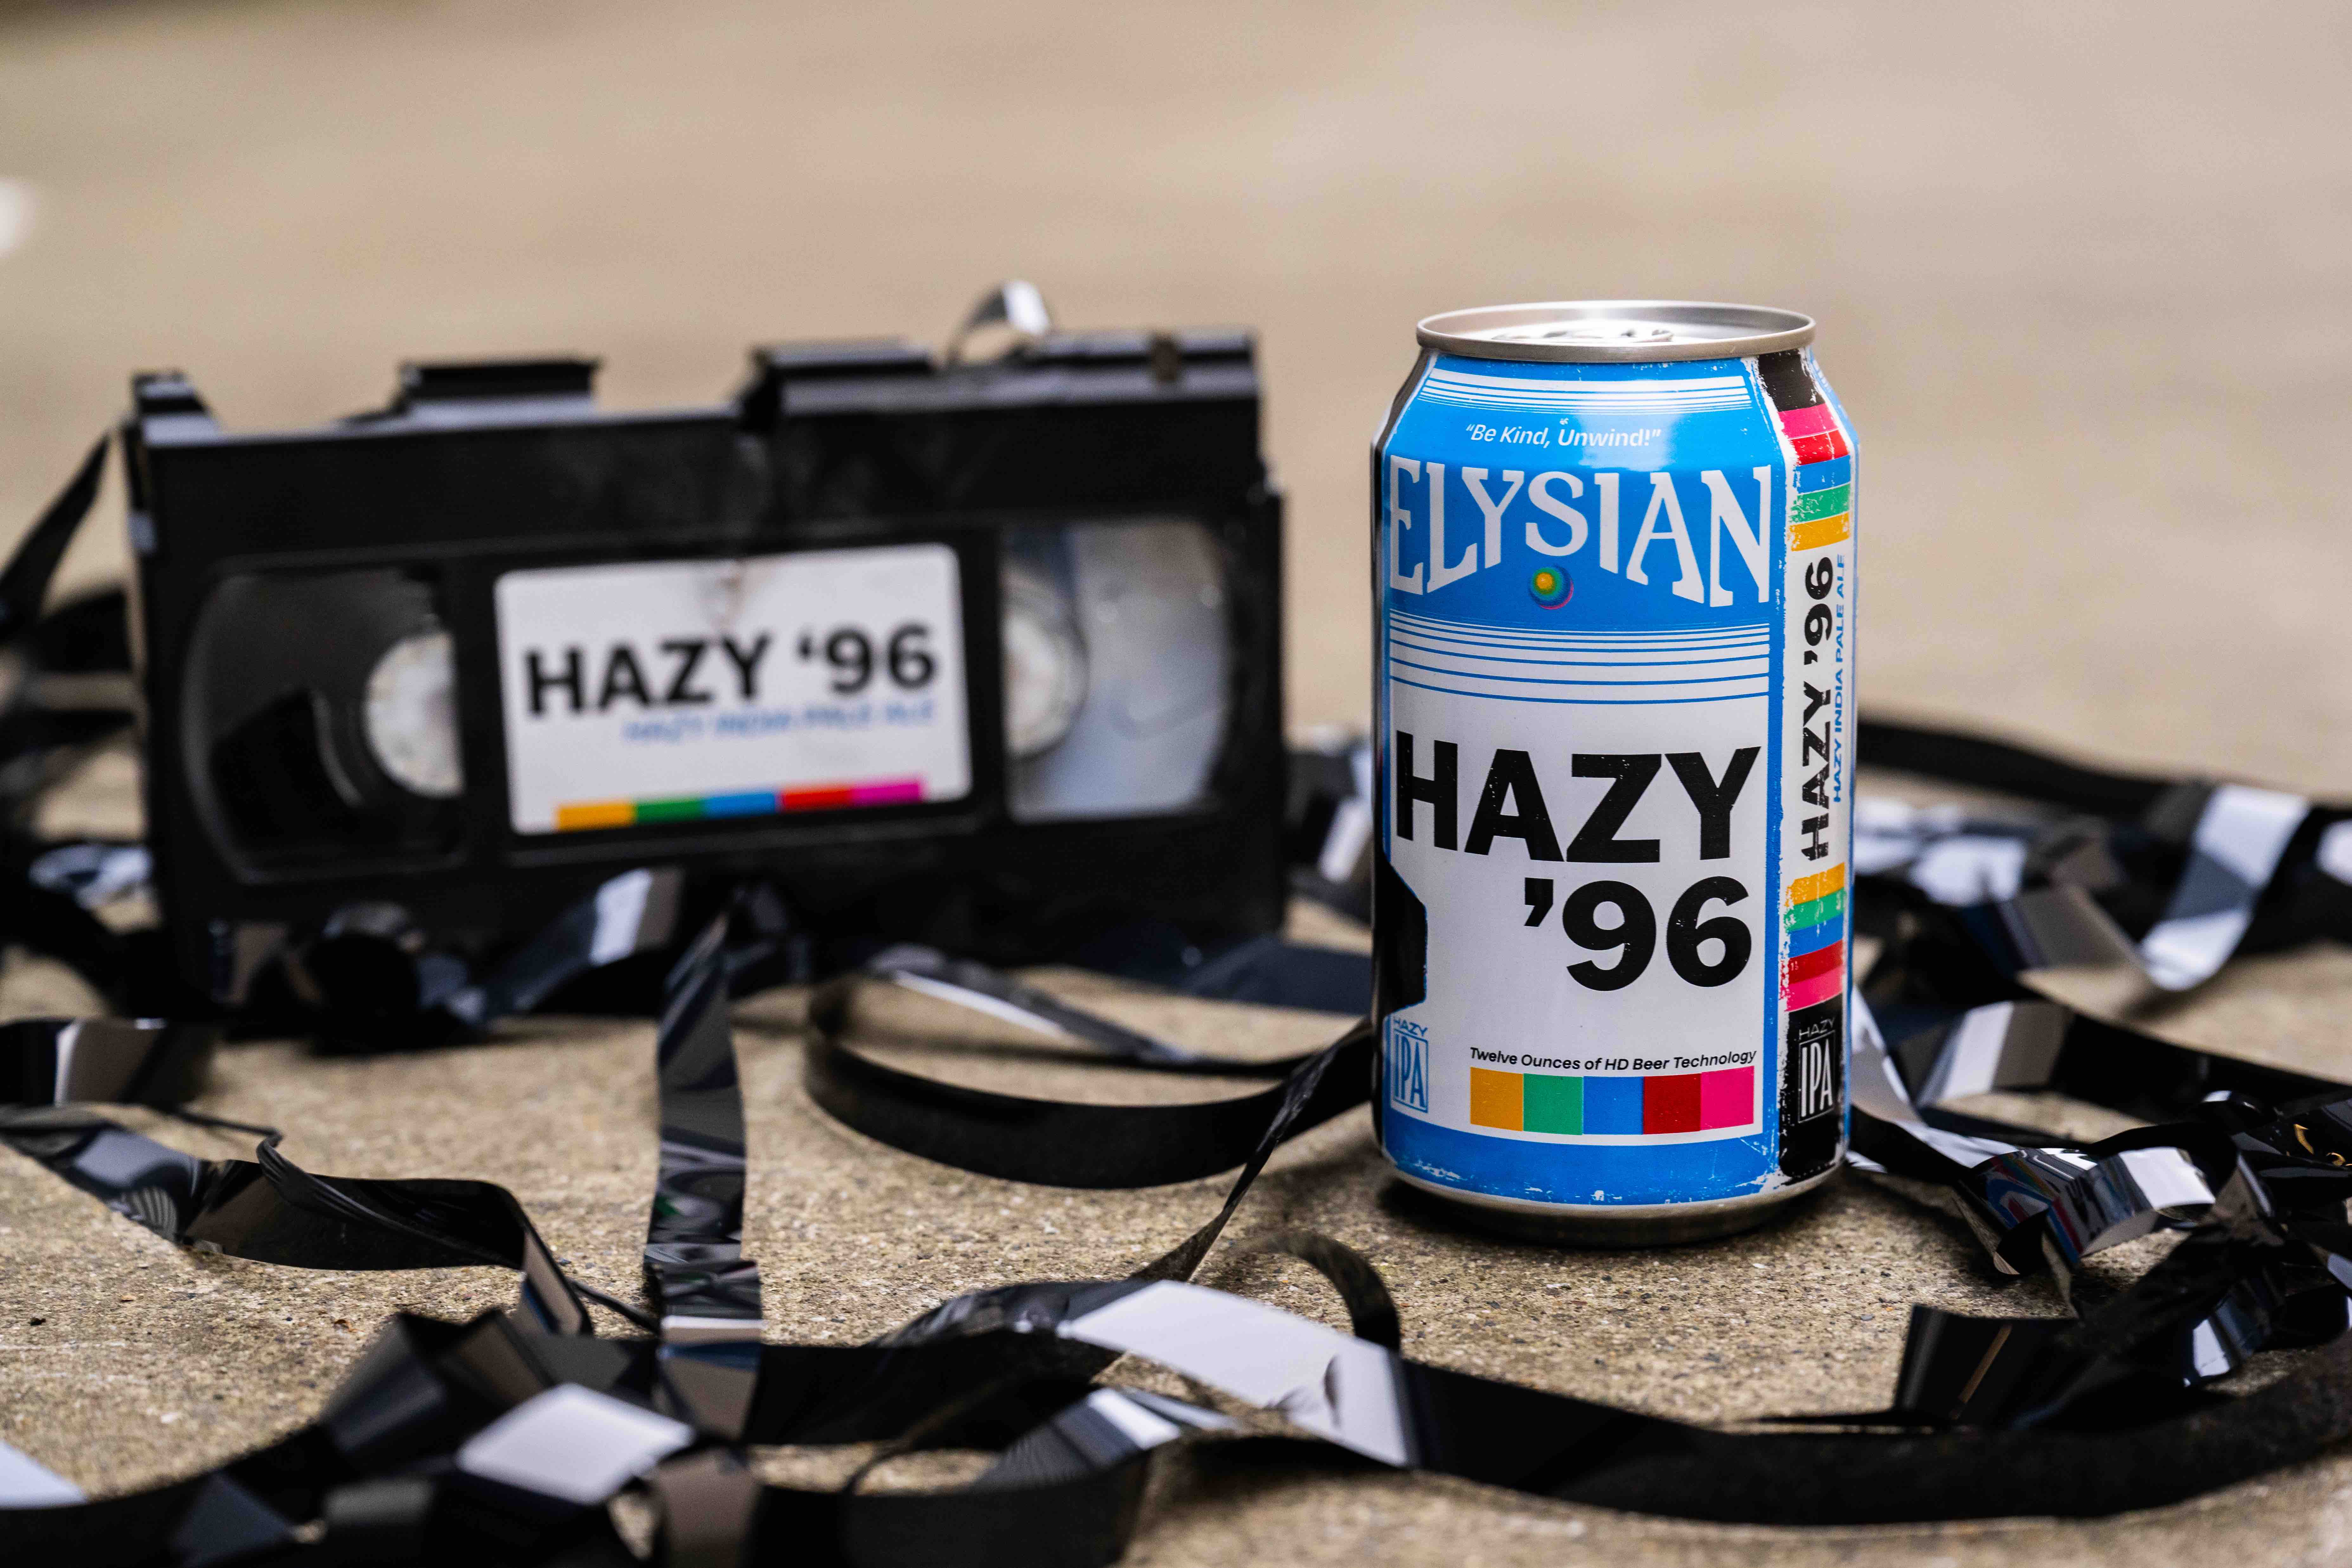 image of Hazy '96 courtesy of Elysian Brewing